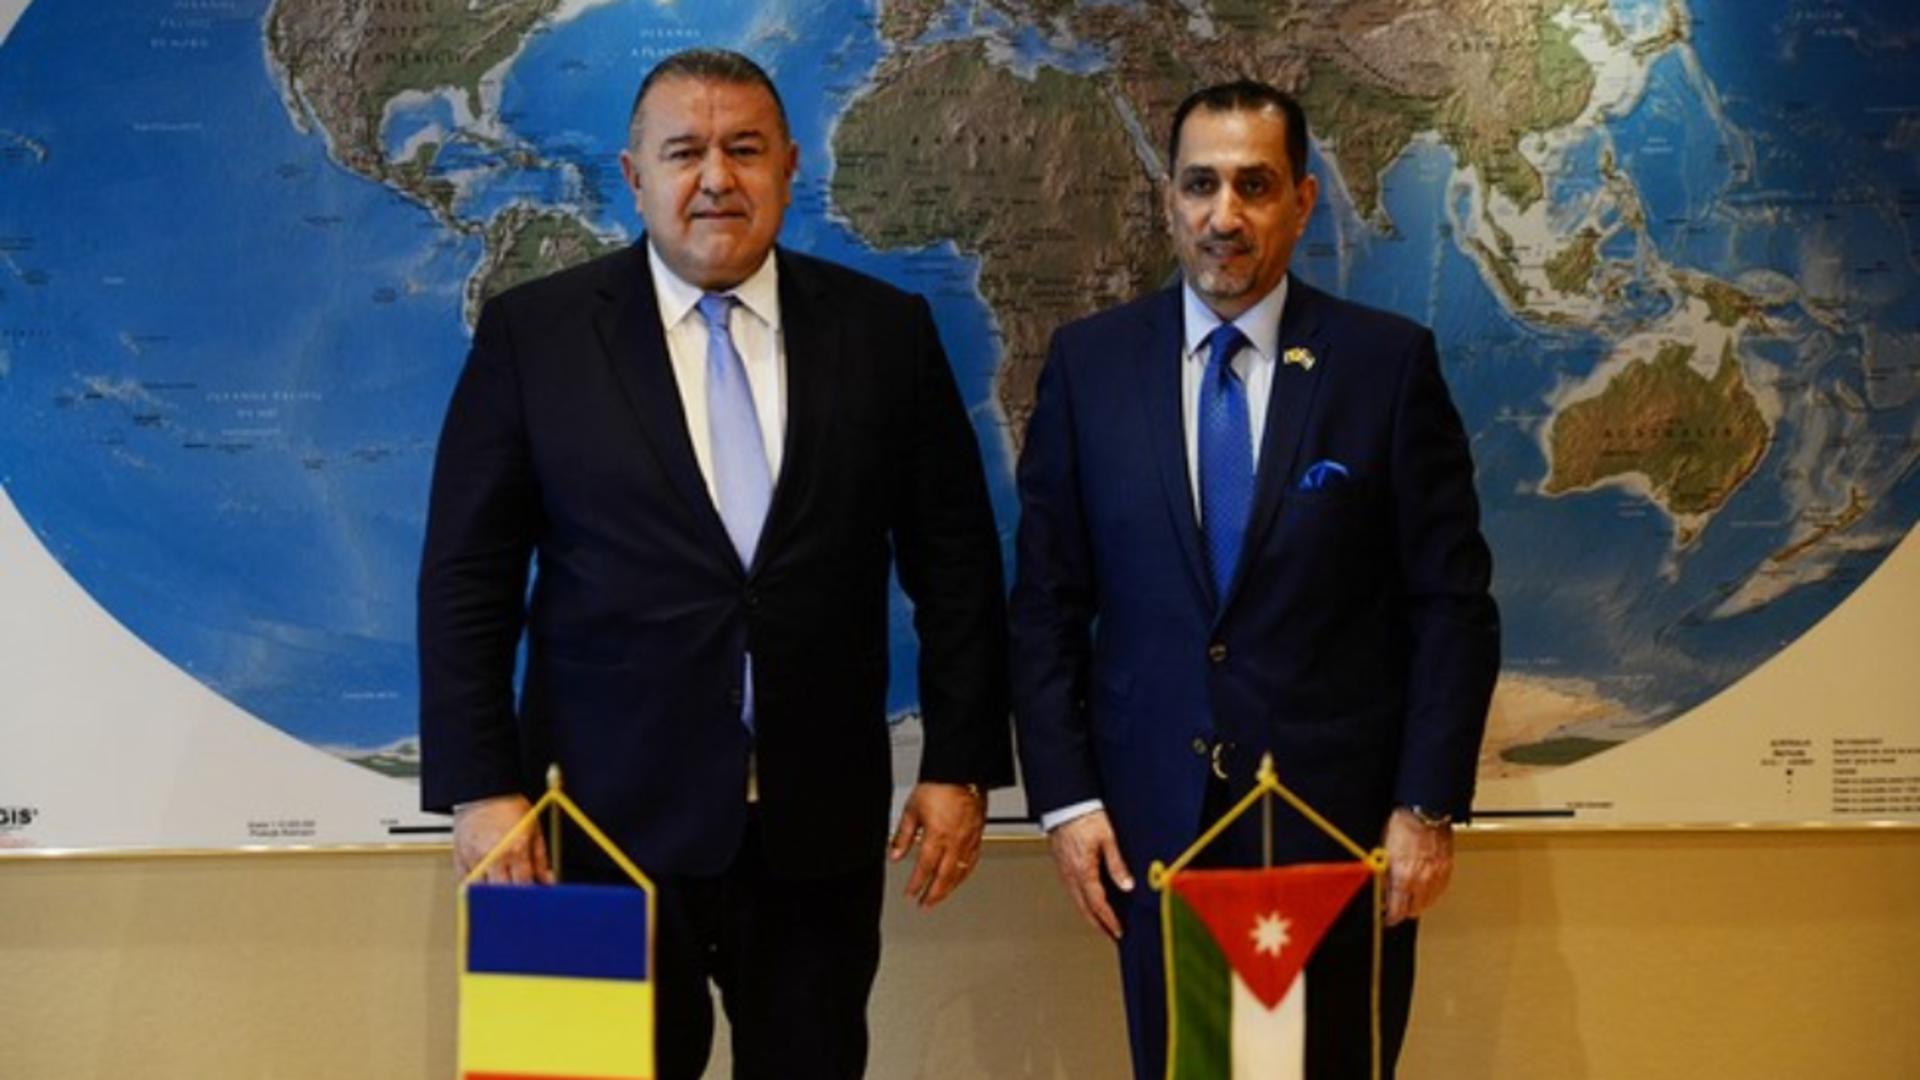 CCIR: România-Iordania, proiecte economice bilaterale ambițioase